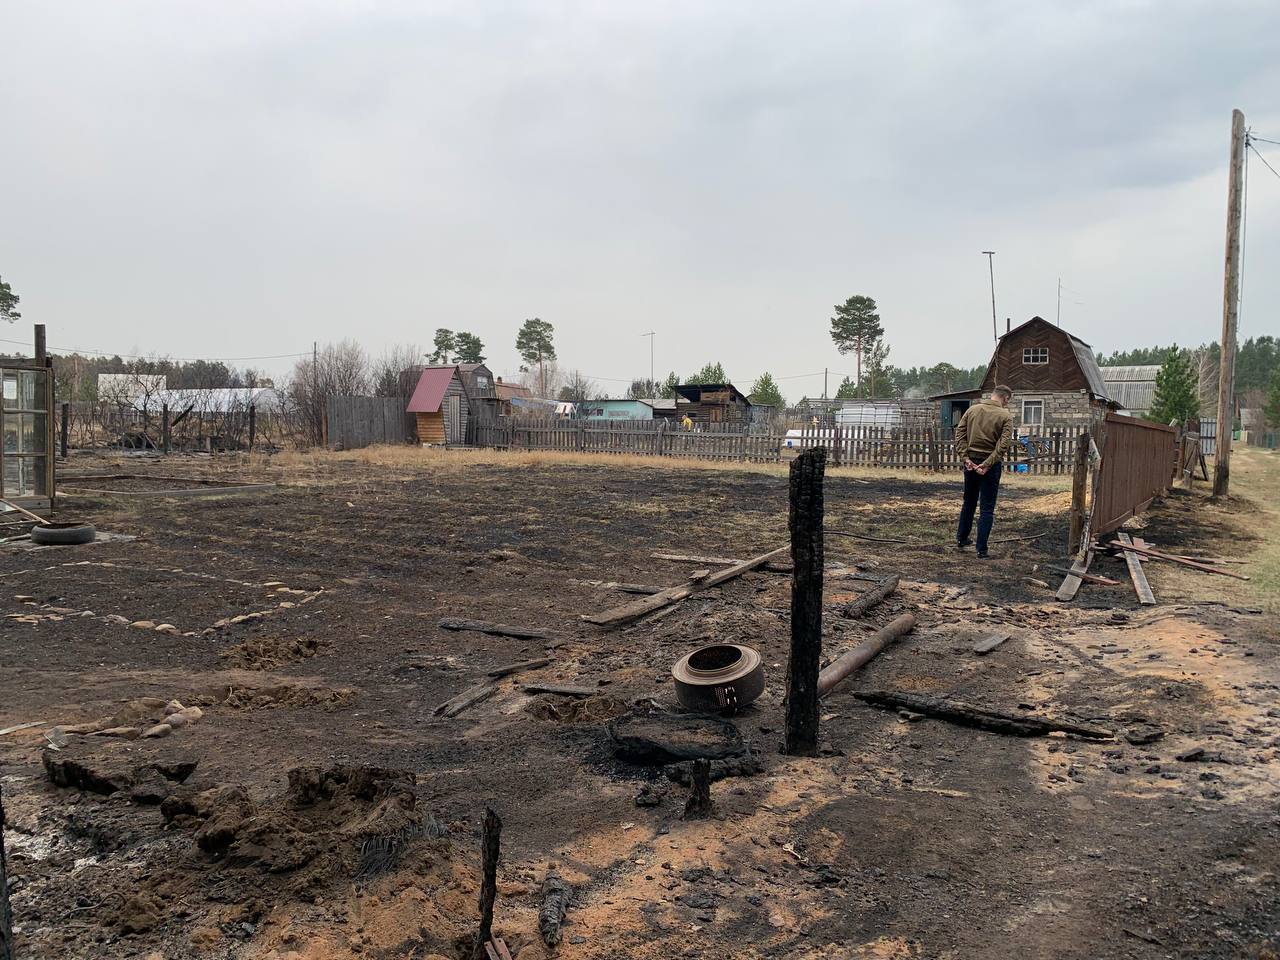 Шести семьям, пострадавшим от пожара в Усольском районе 9 мая, назначили выплаты